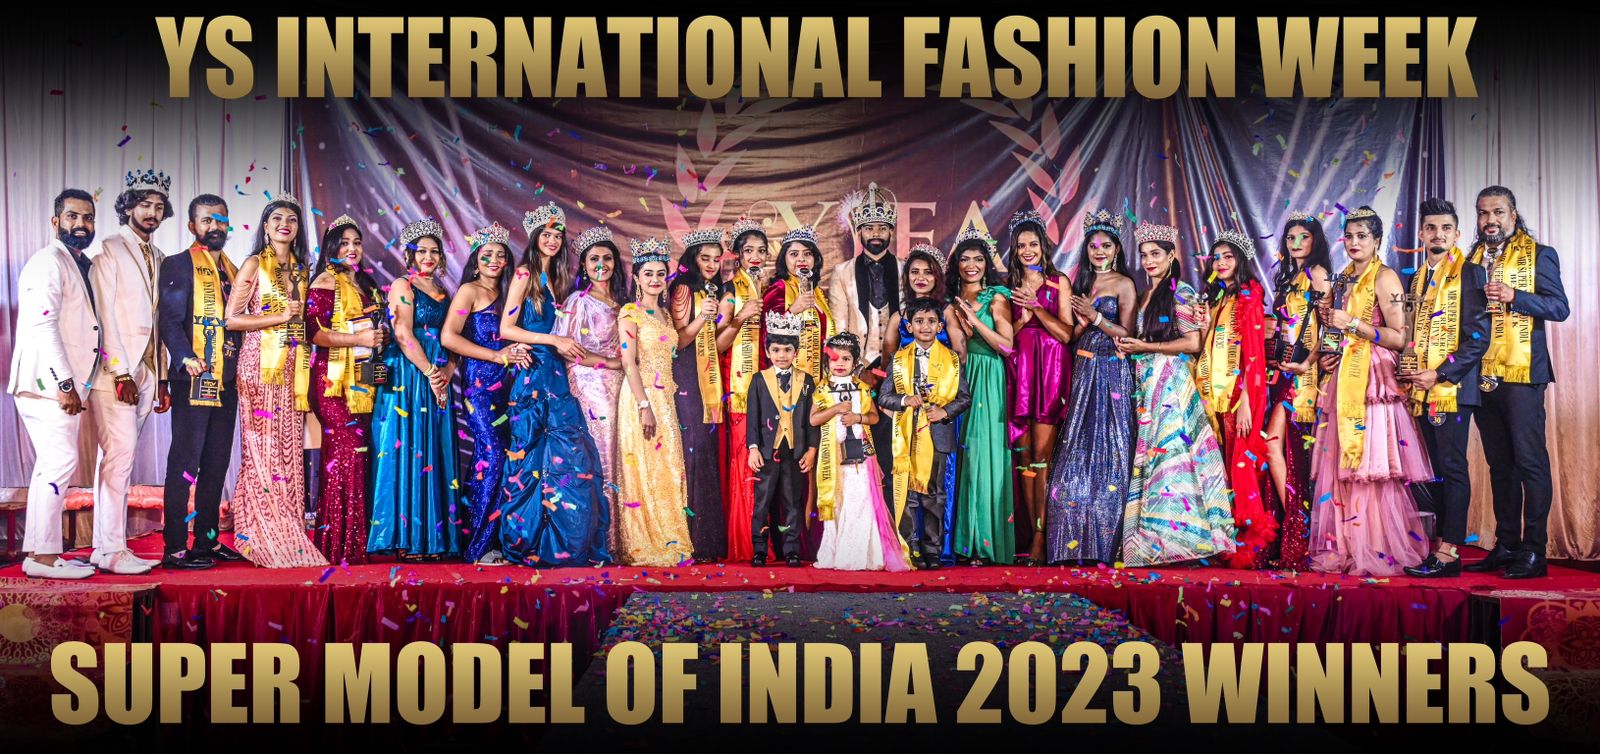 Super Model of India 2023 Winners YIFW : Where Dreams Soar and Stars Emerge